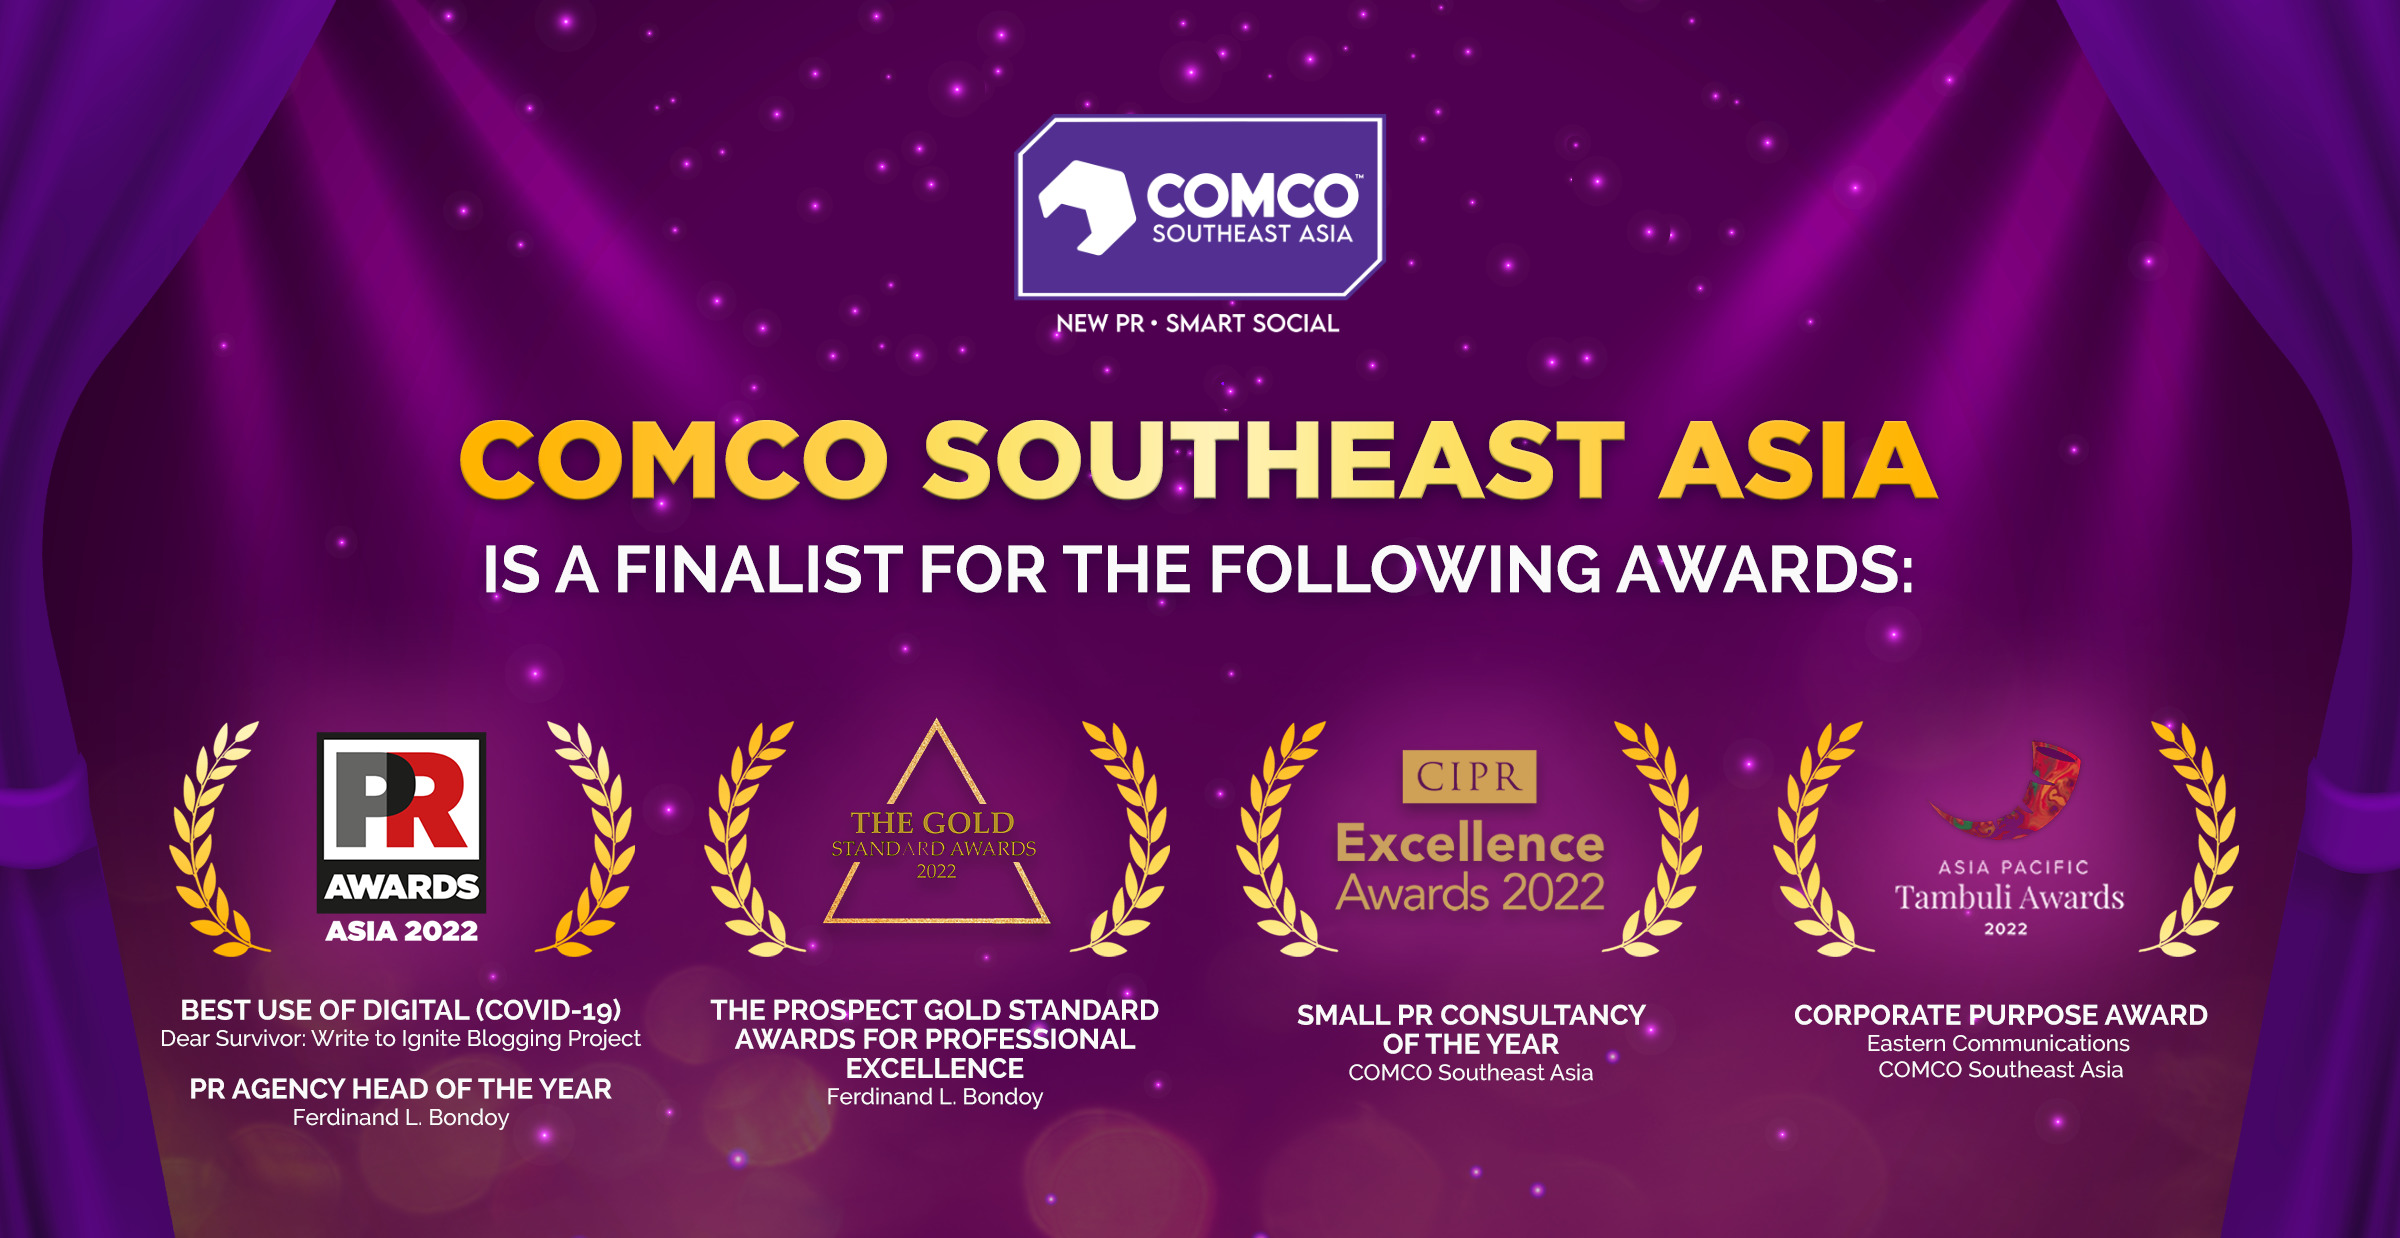 Awards COMCO Southeast Asia New PR Smart Social